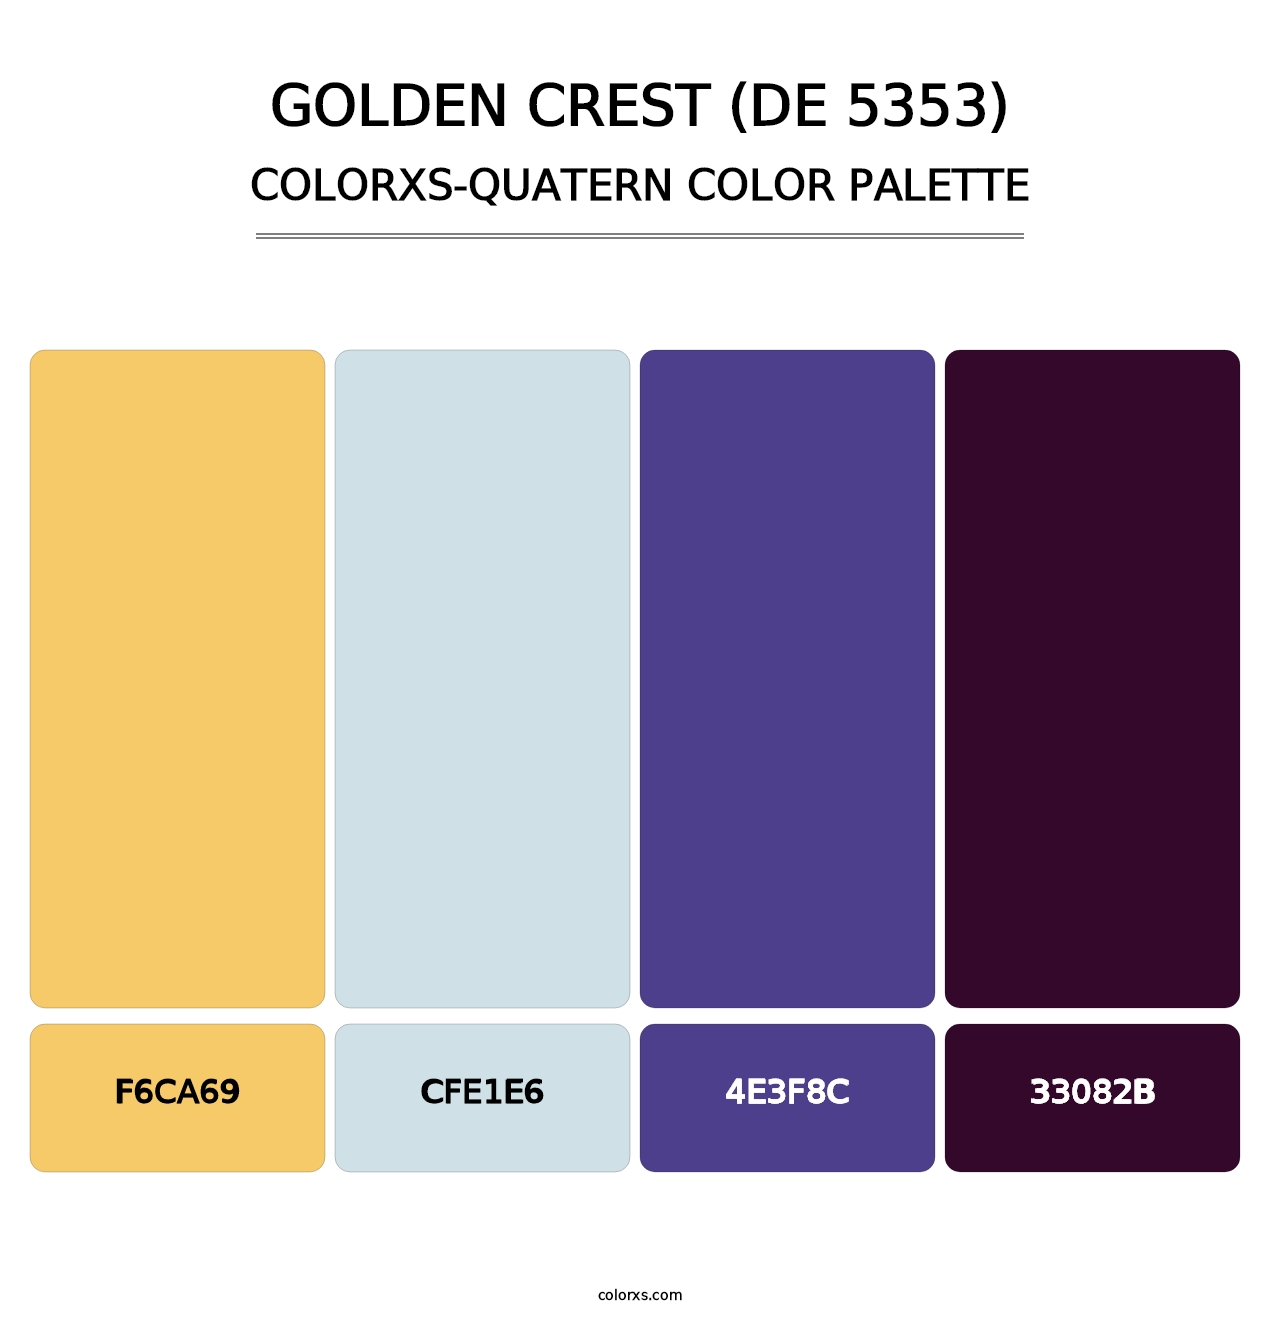 Golden Crest (DE 5353) - Colorxs Quatern Palette